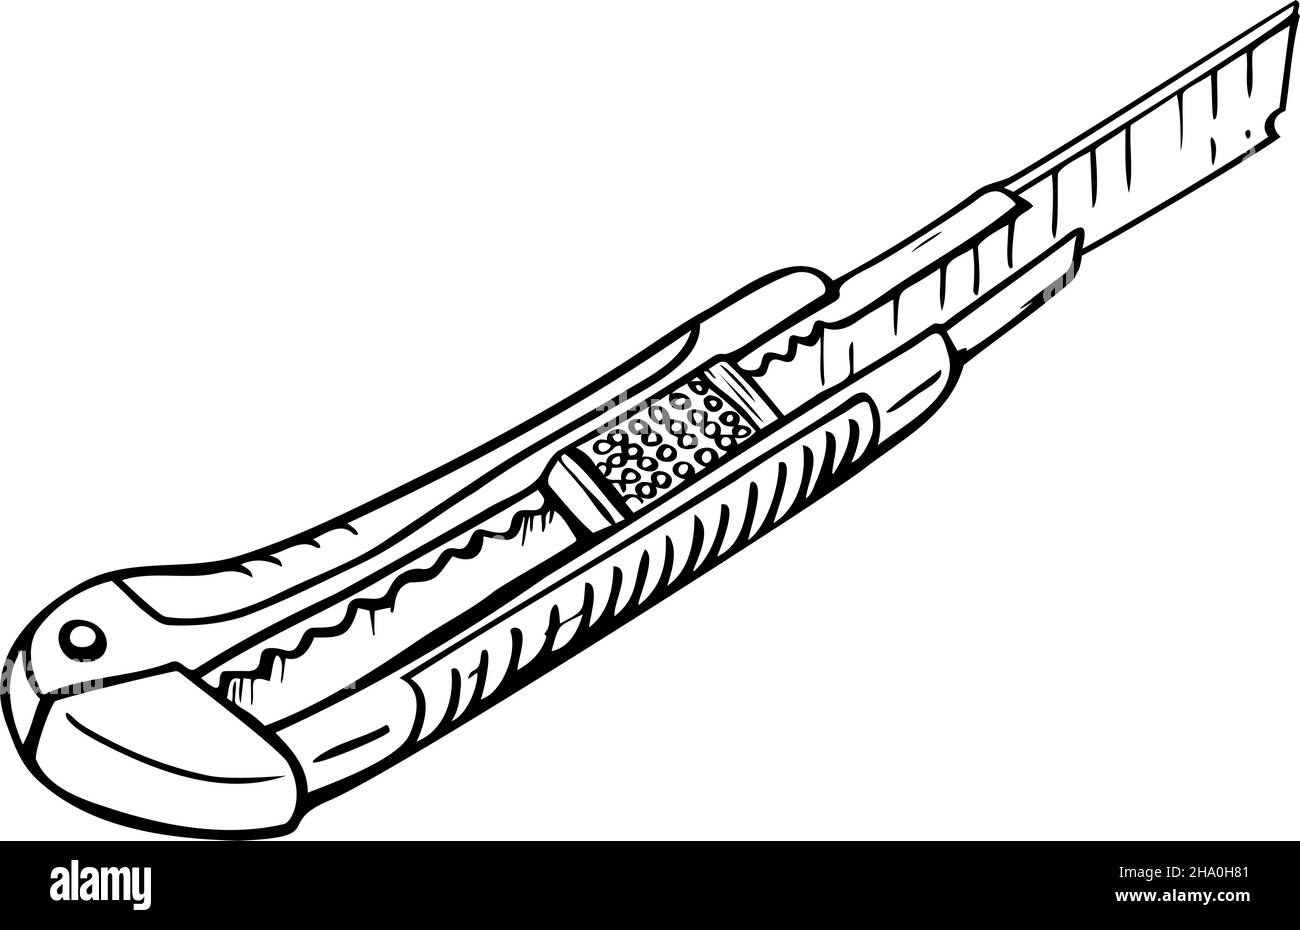 Vektor-Illustration von Schreibwarenmesser. Schwarz-weißer Boxcutter. Stock Vektor